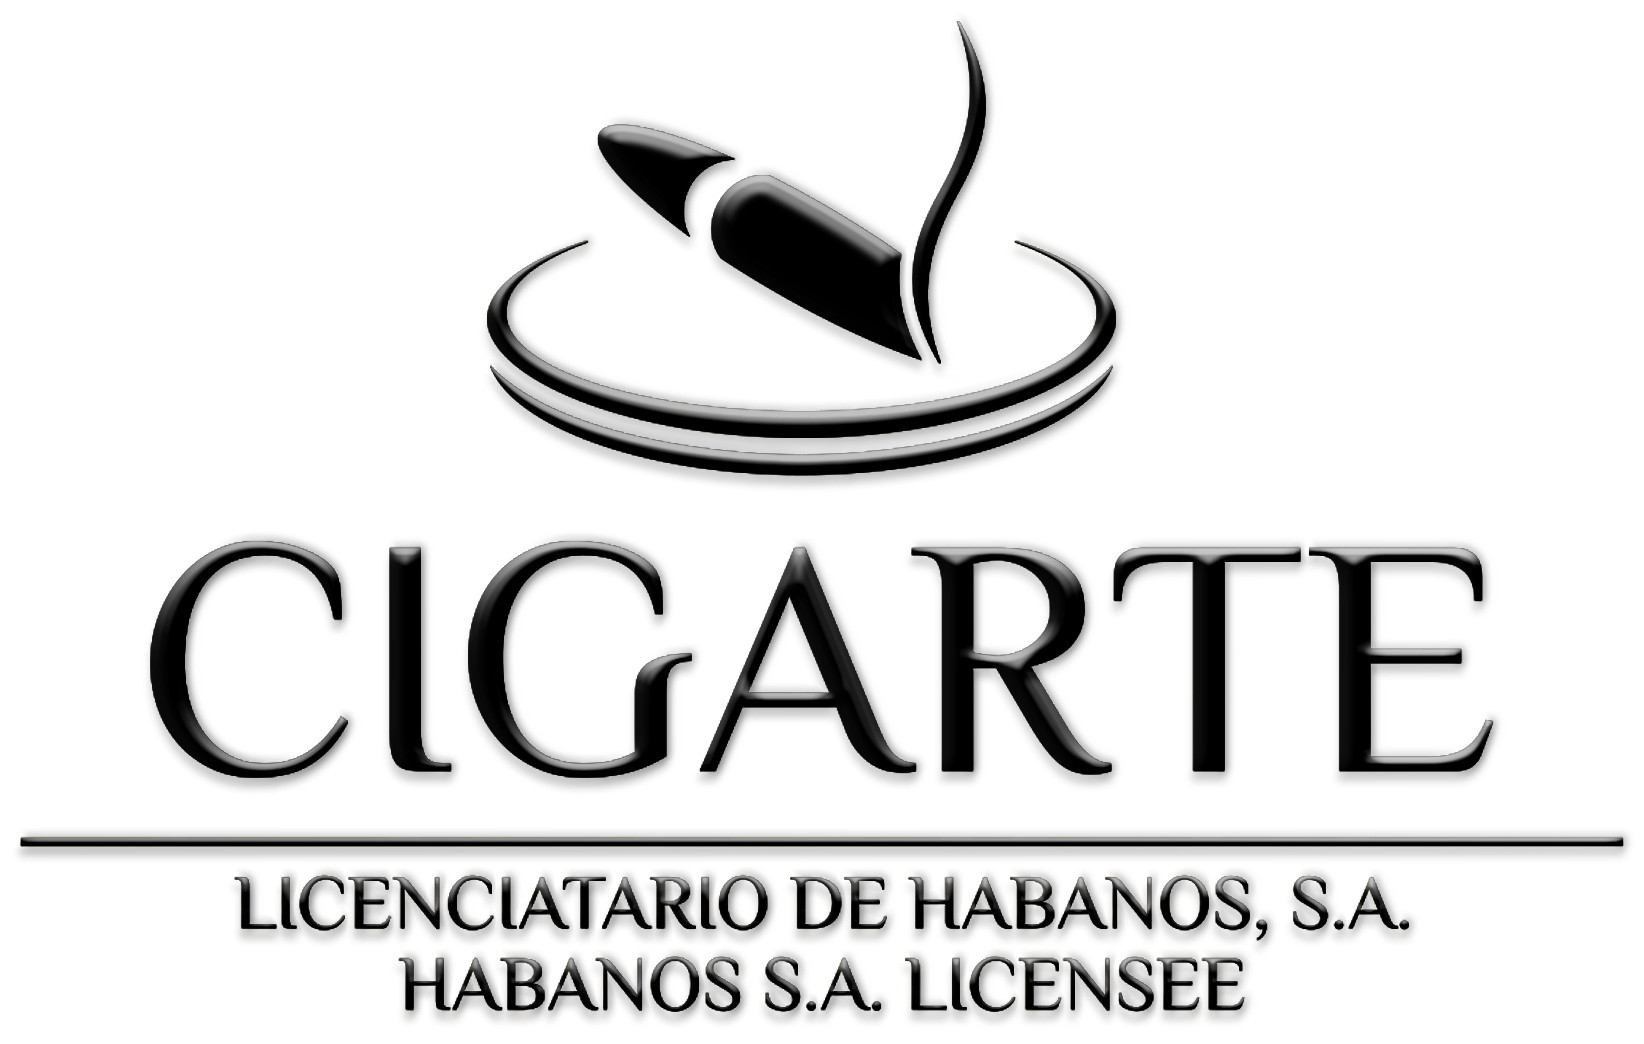 Cigarte